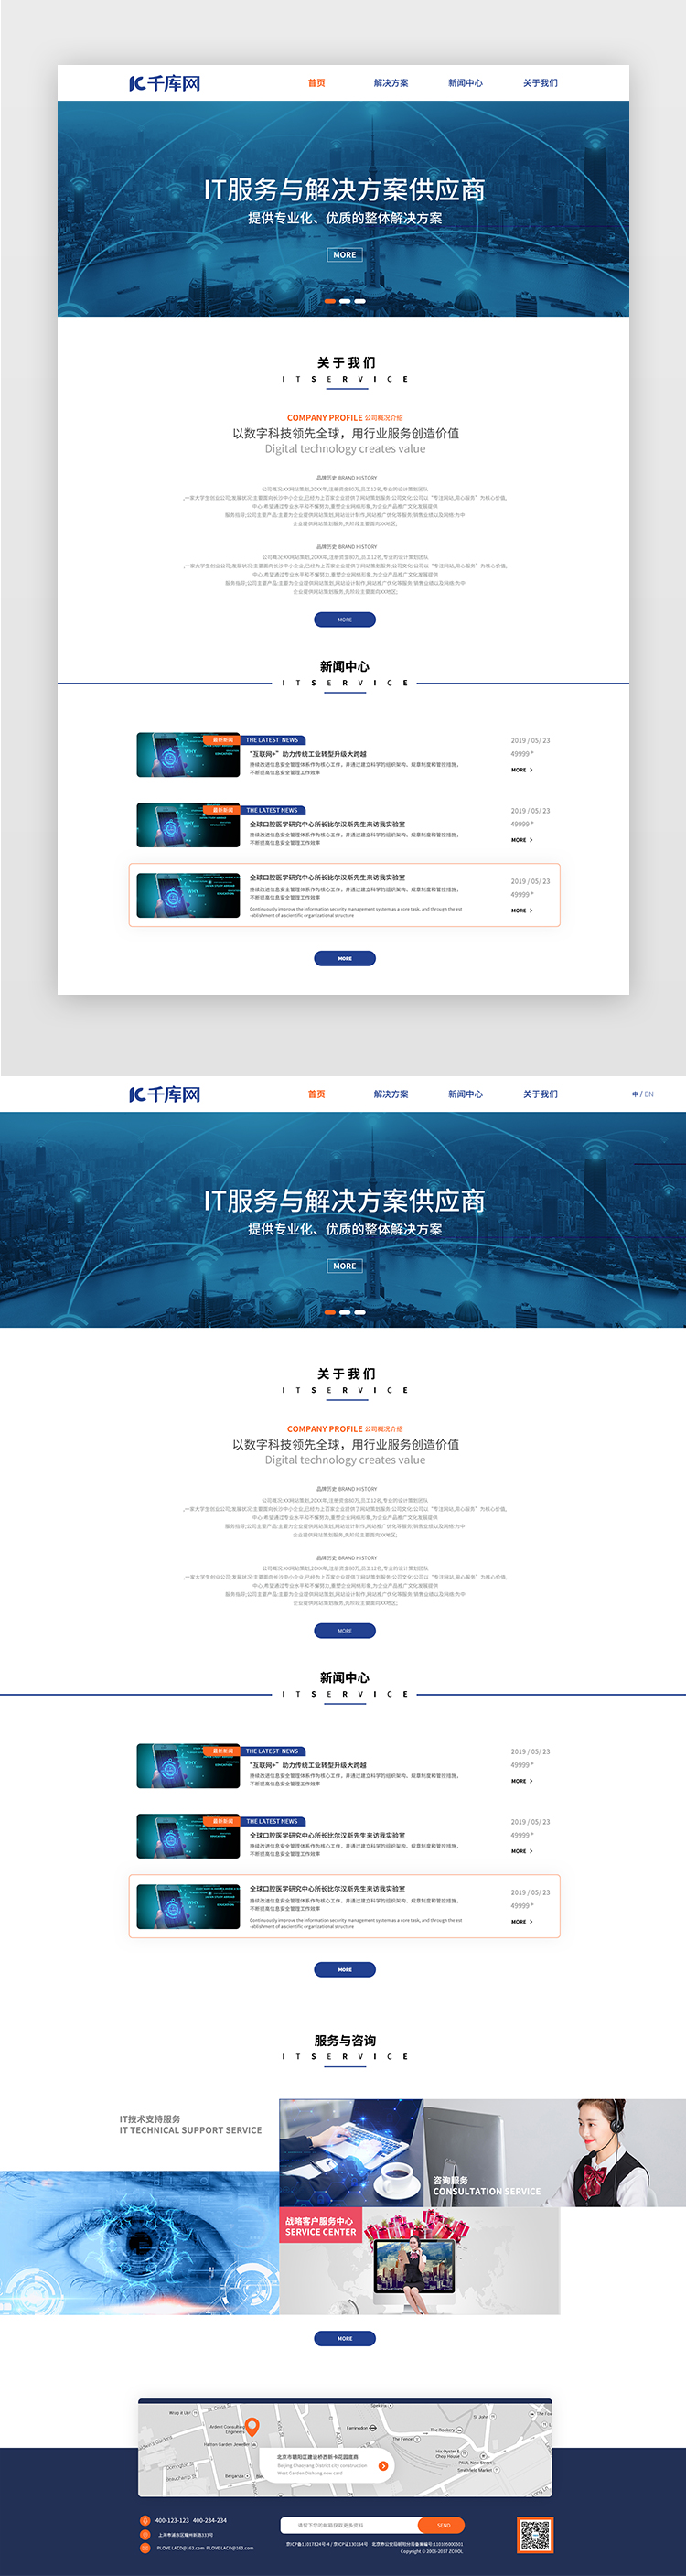 蓝色纯色通用IT基本设施企业类网站首页图片